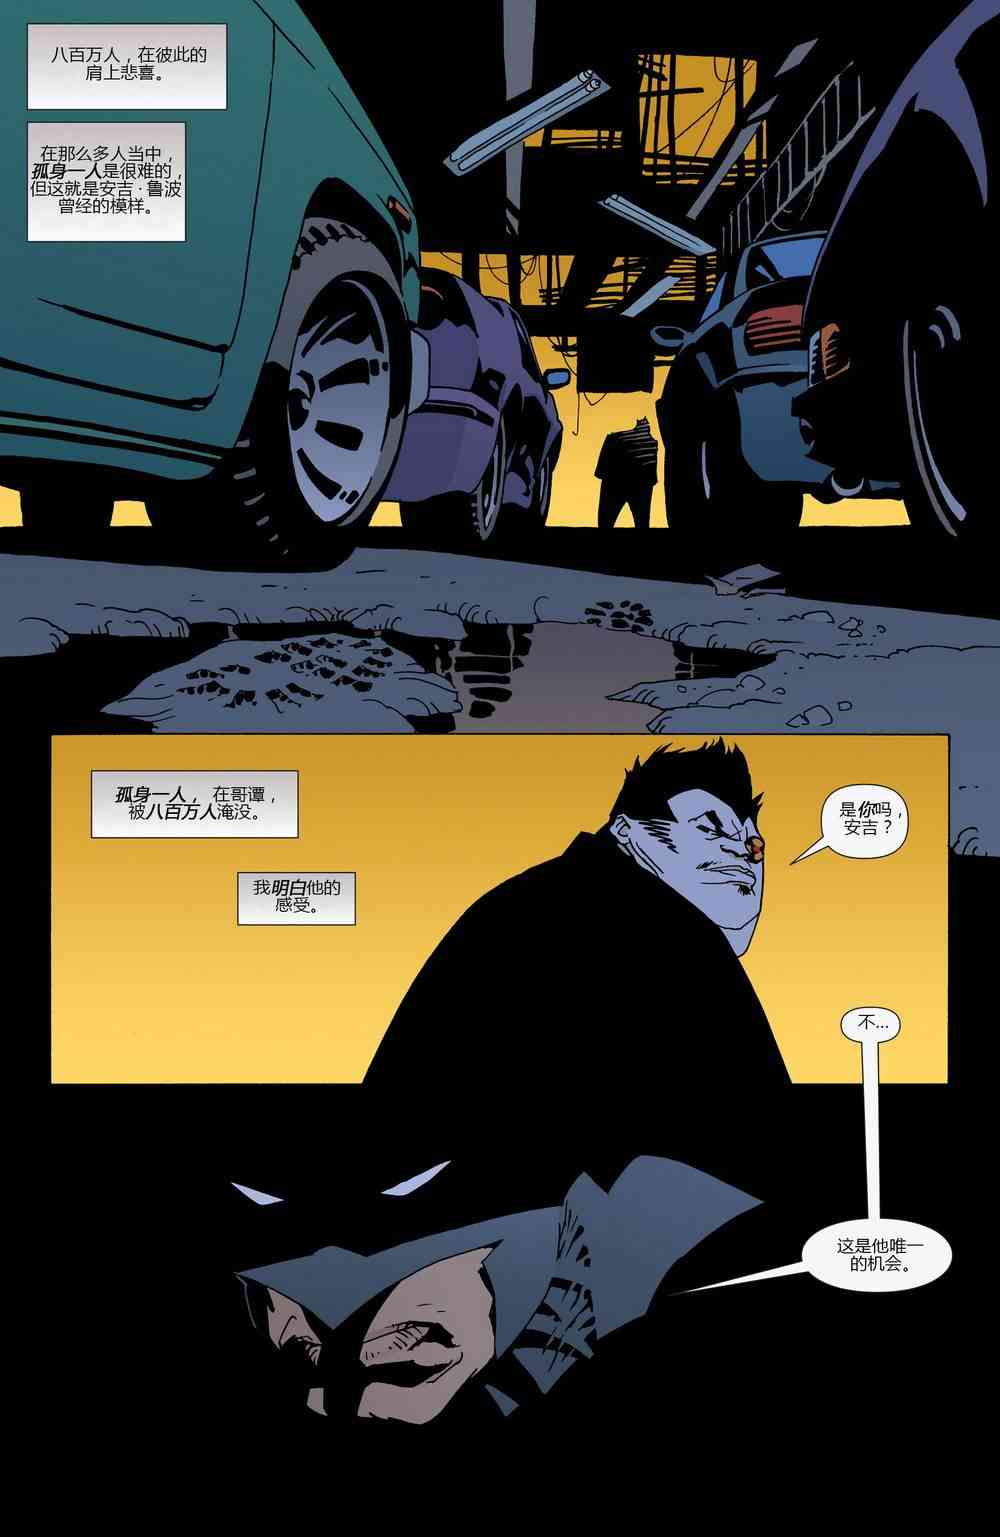 蝙蝠侠 - 第624卷破碎城市#5 - 1